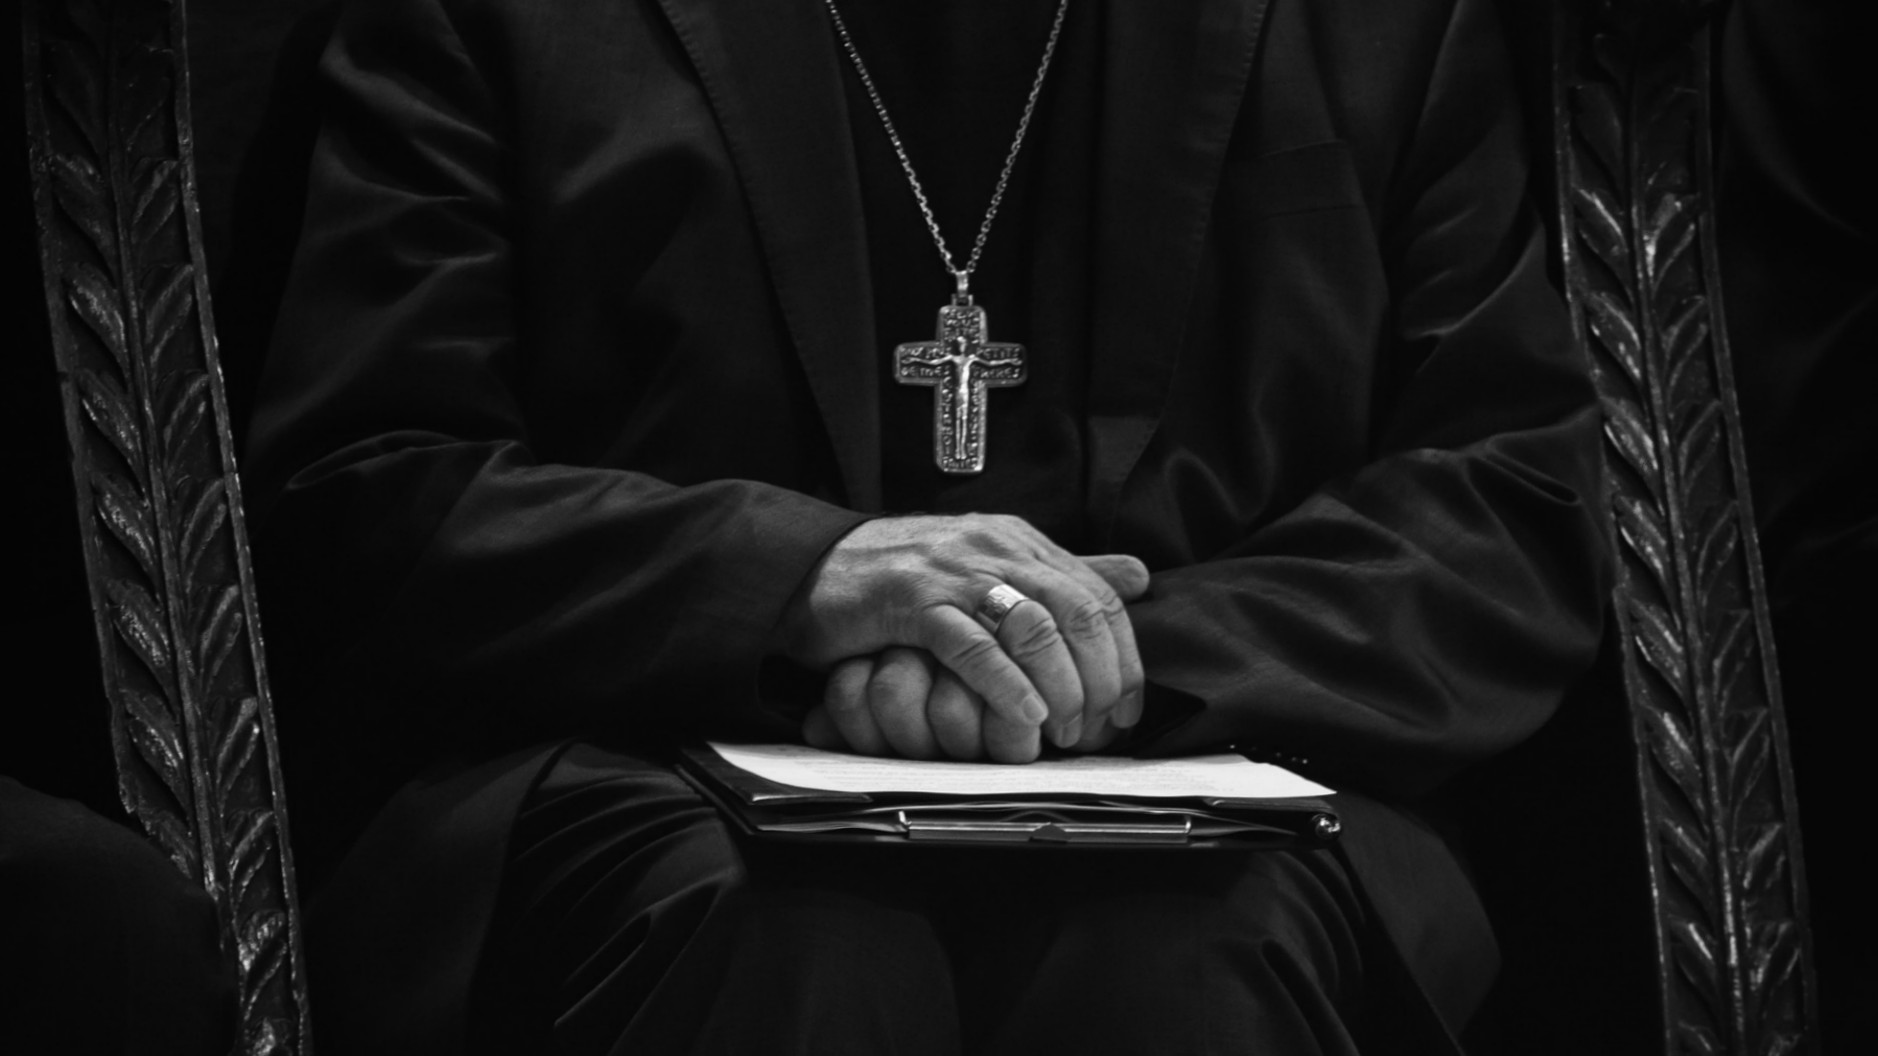 Beaucoup se demandent si l'Eglise traite avec sérieux le dossier des abus sexuels (Photo:Pixabay.com)